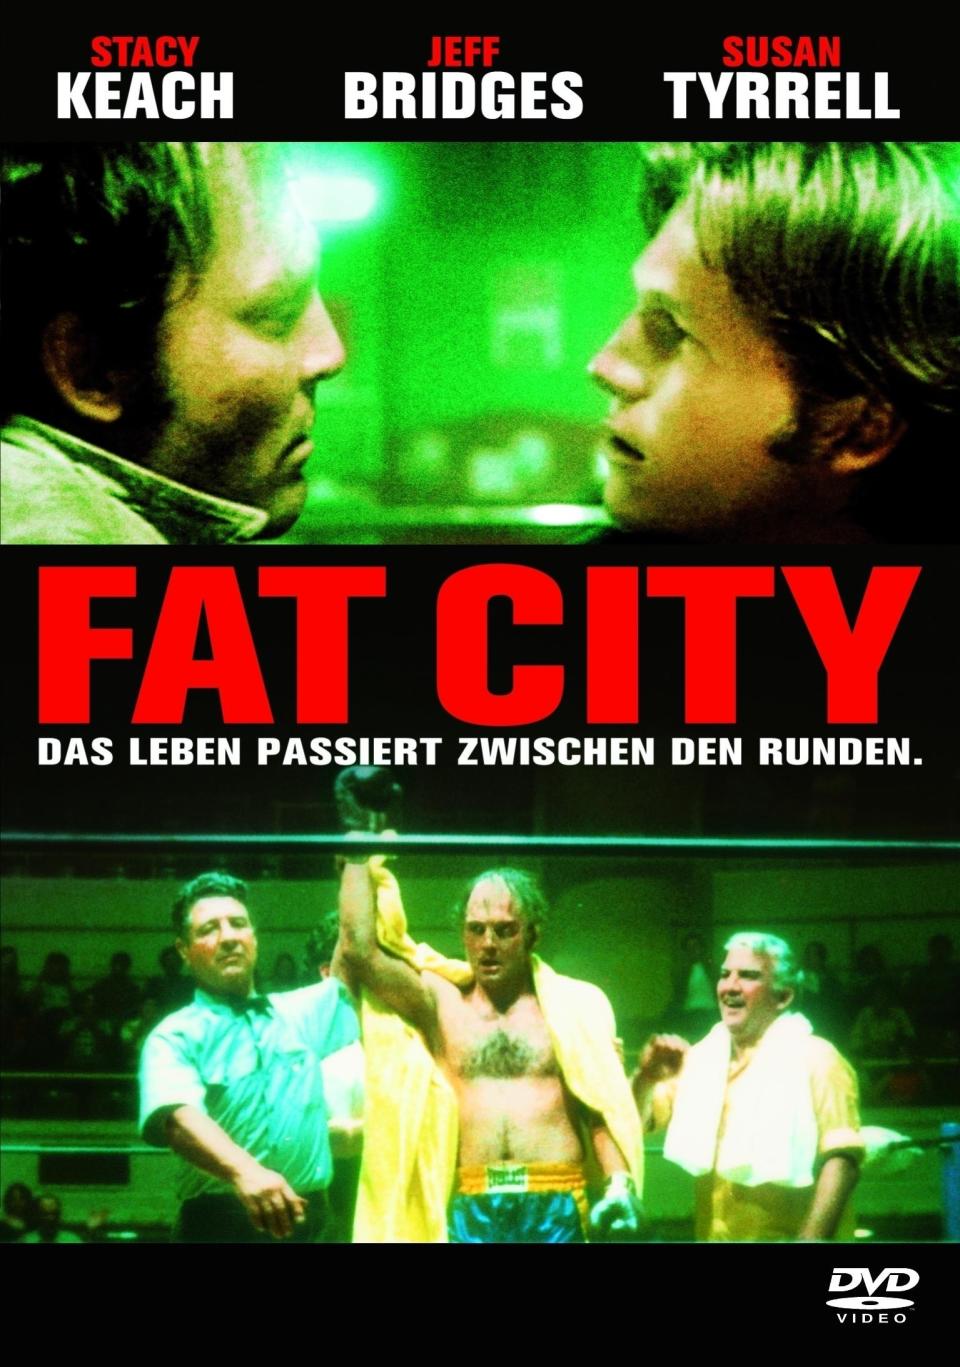 8. Fat City